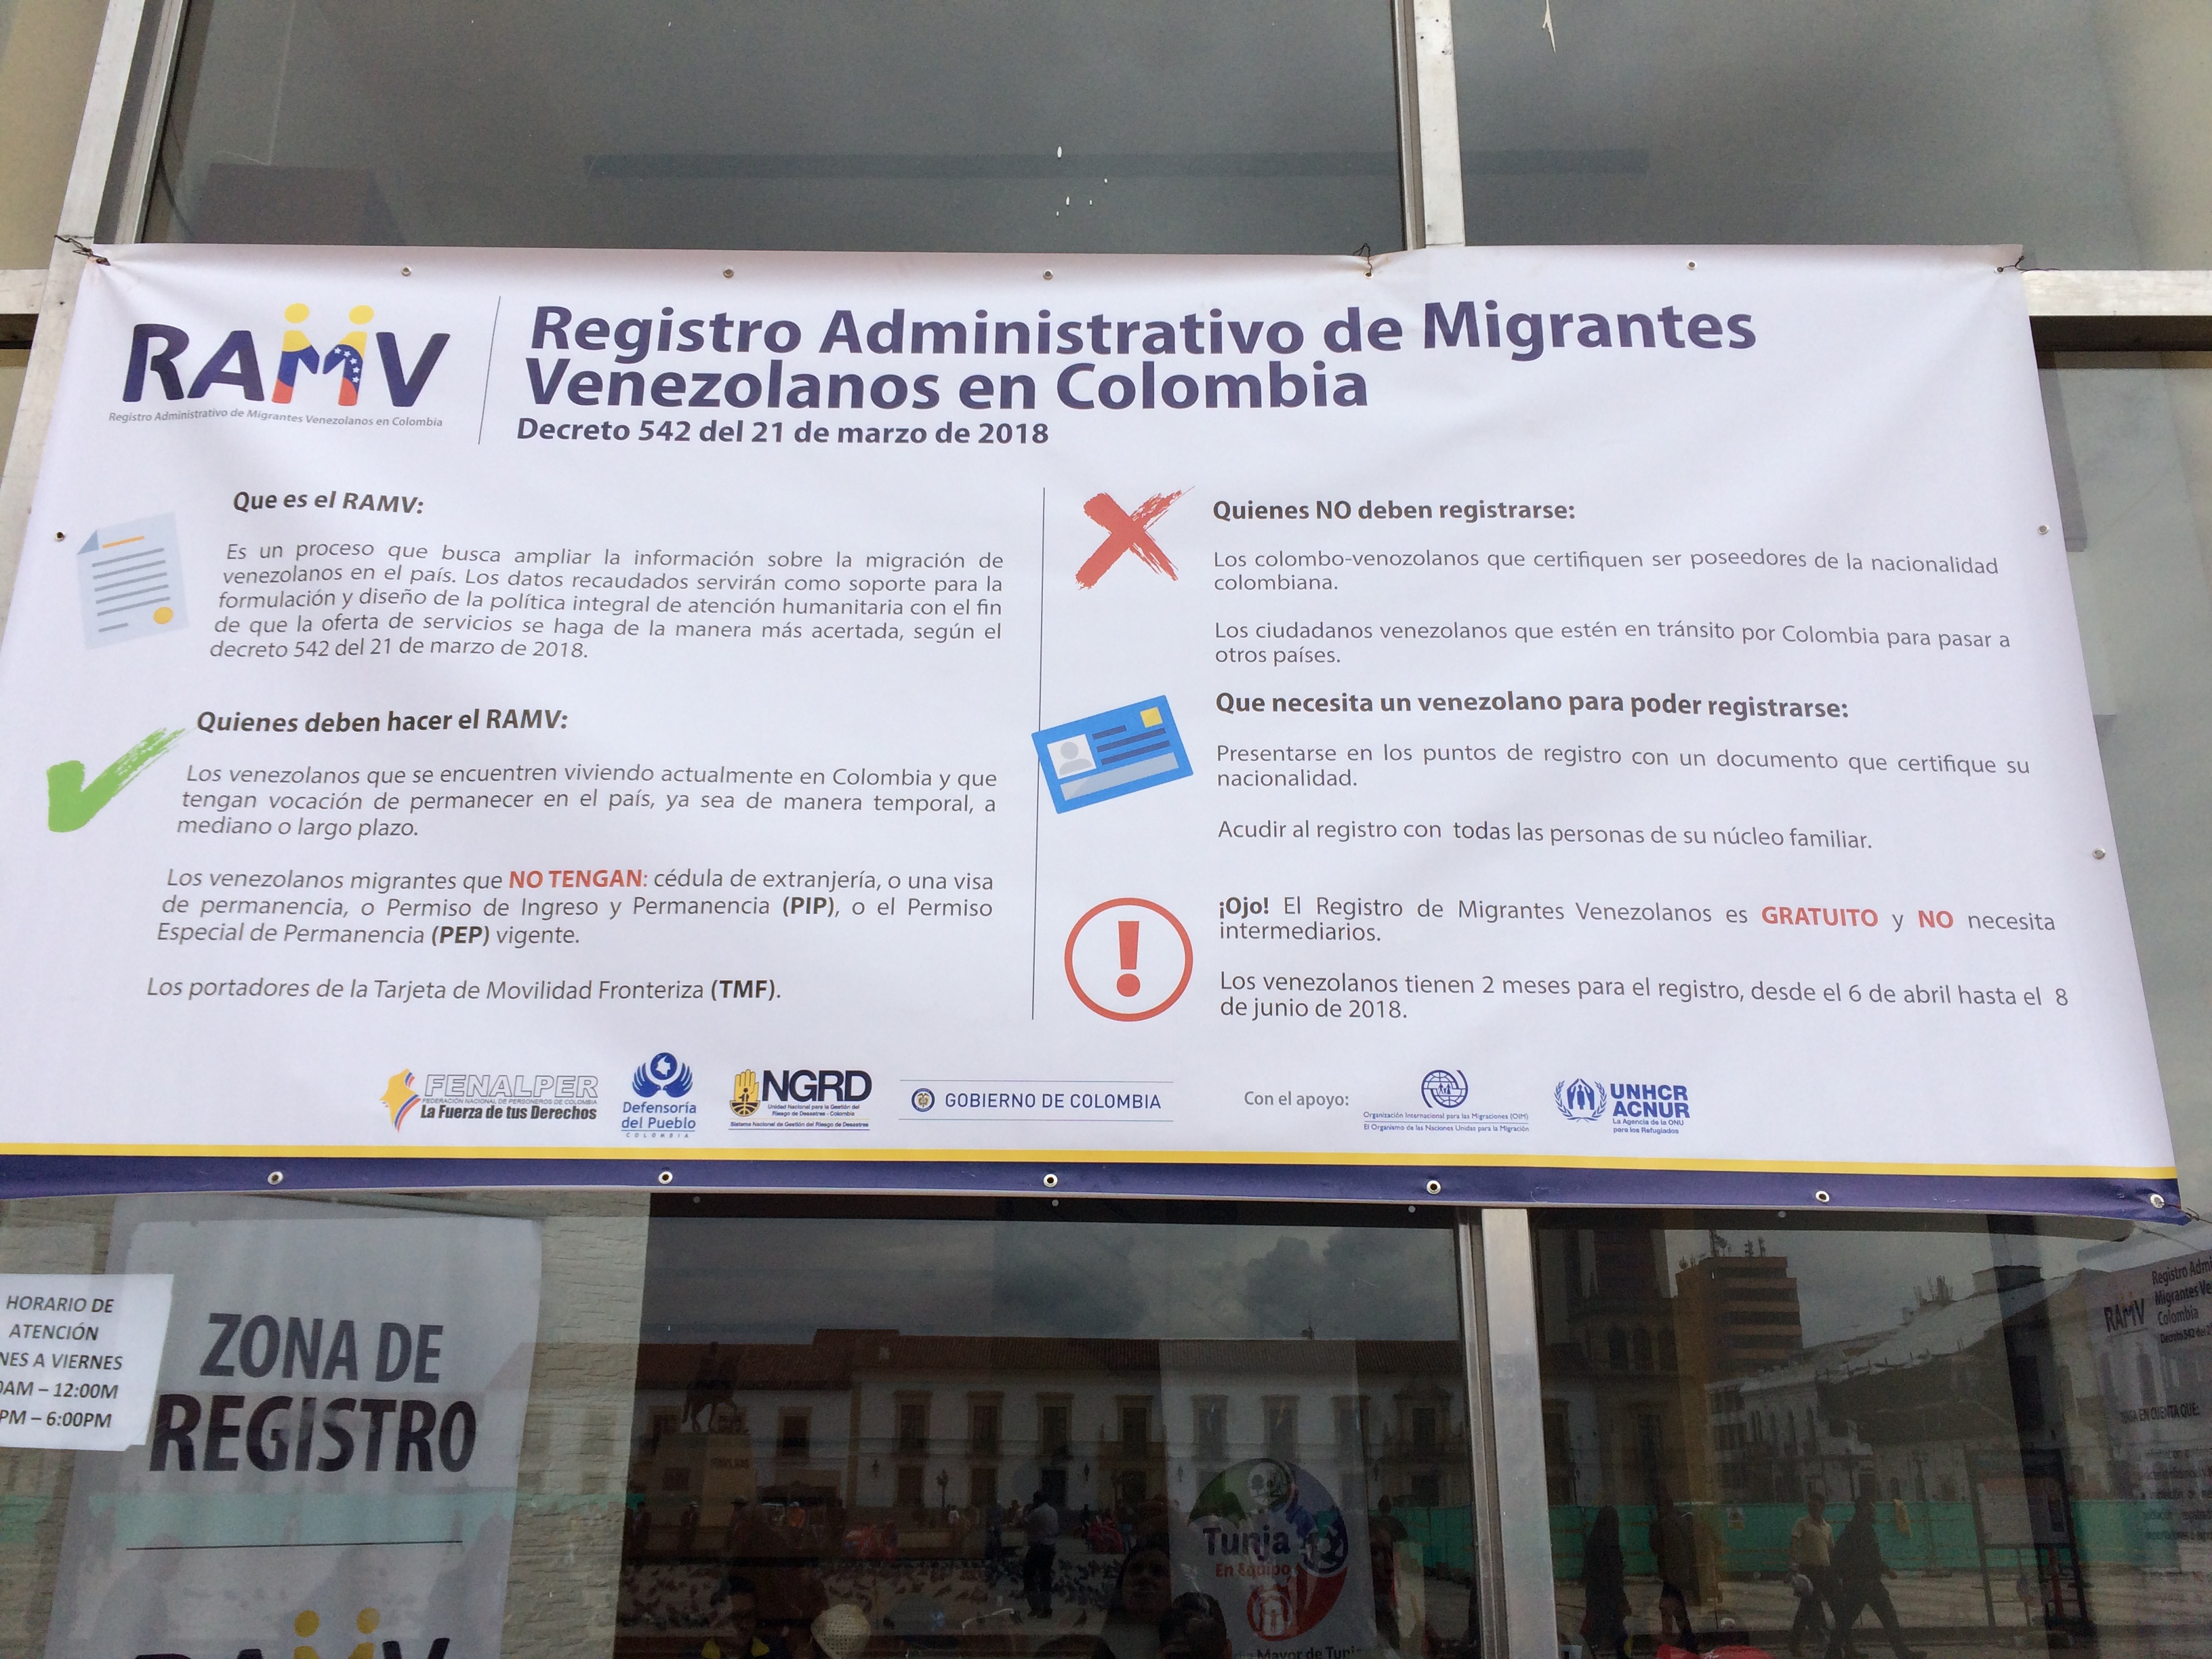 Valla Registro Administrativo de Migrantes venezolanos en Colombia